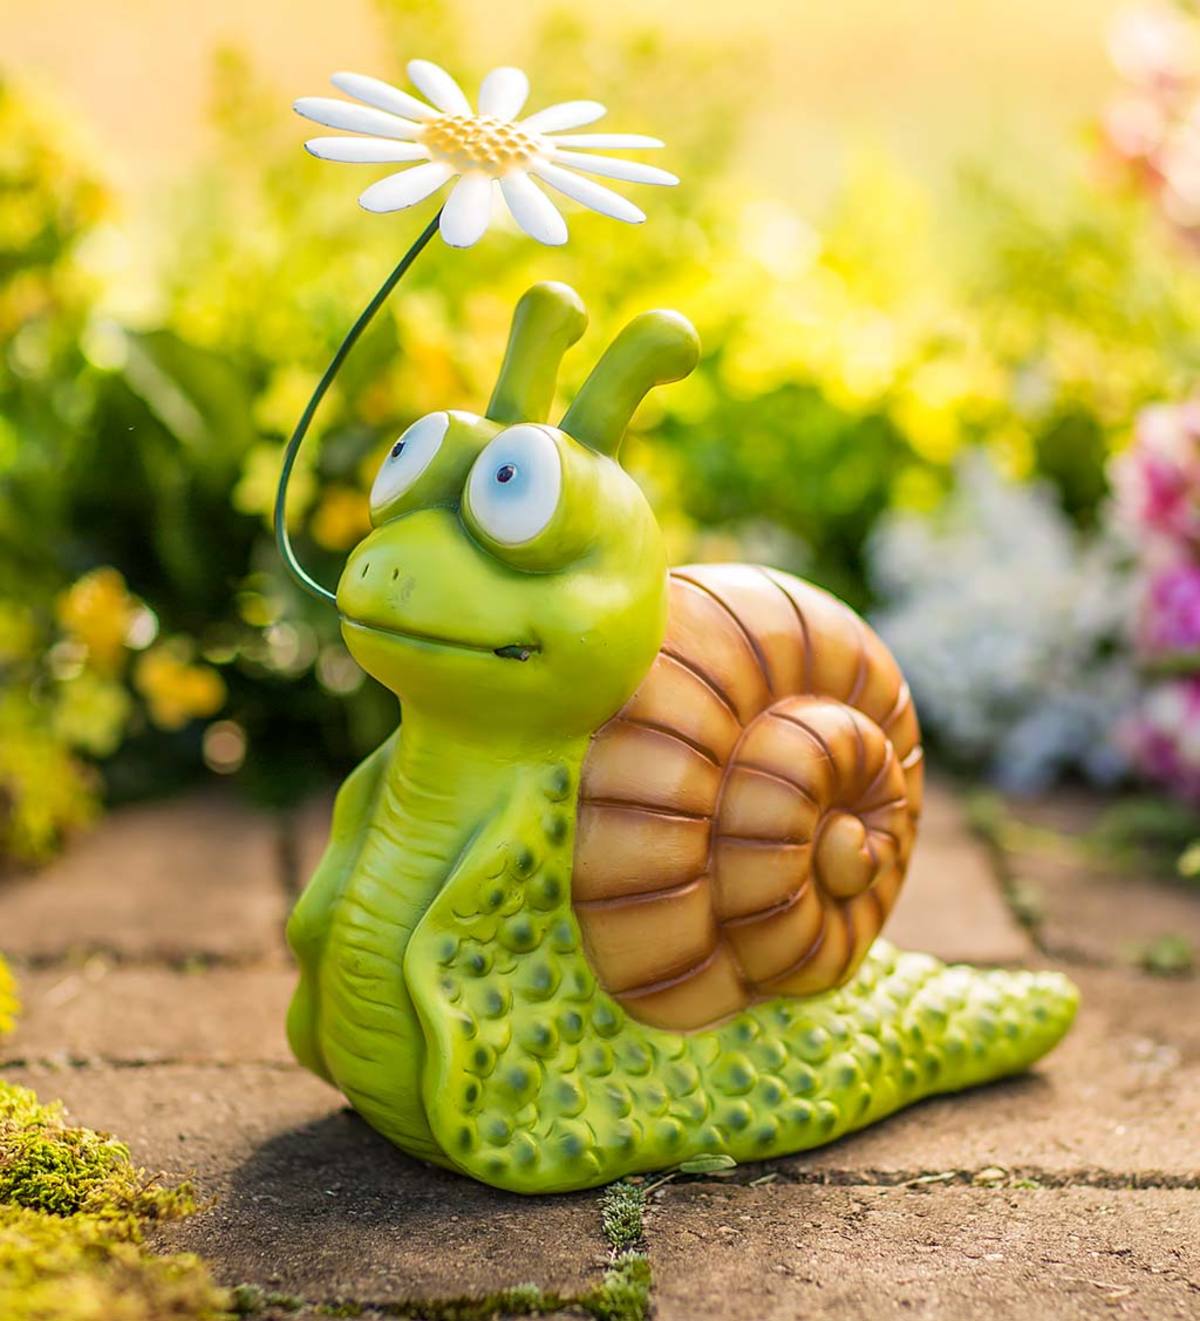 Snail with Flower Garden Sculpture